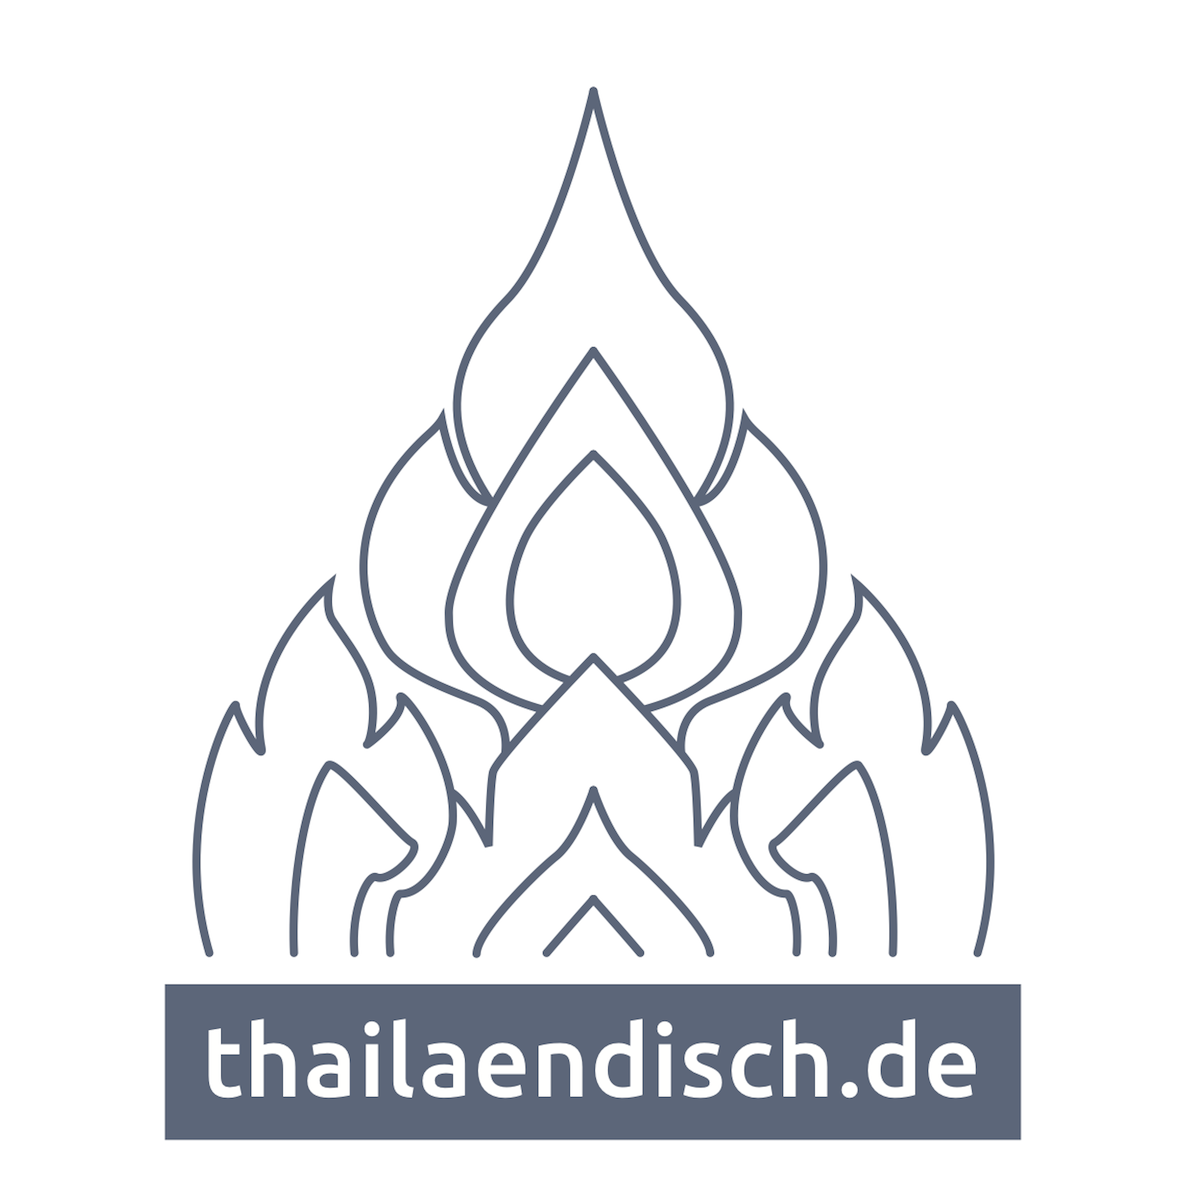 www.thailaendisch.de